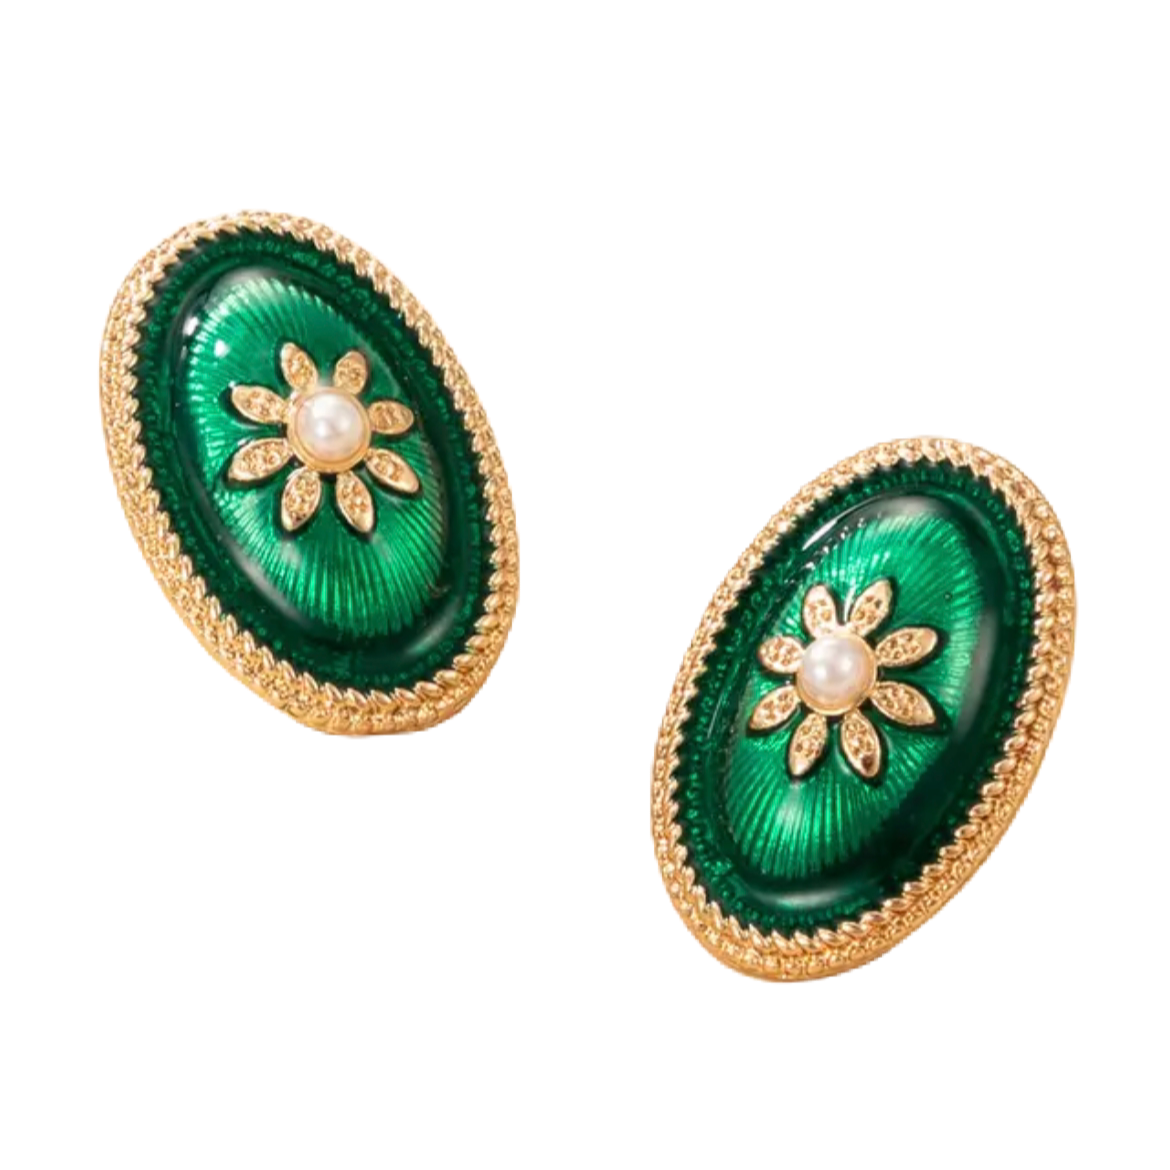 Green button earrings